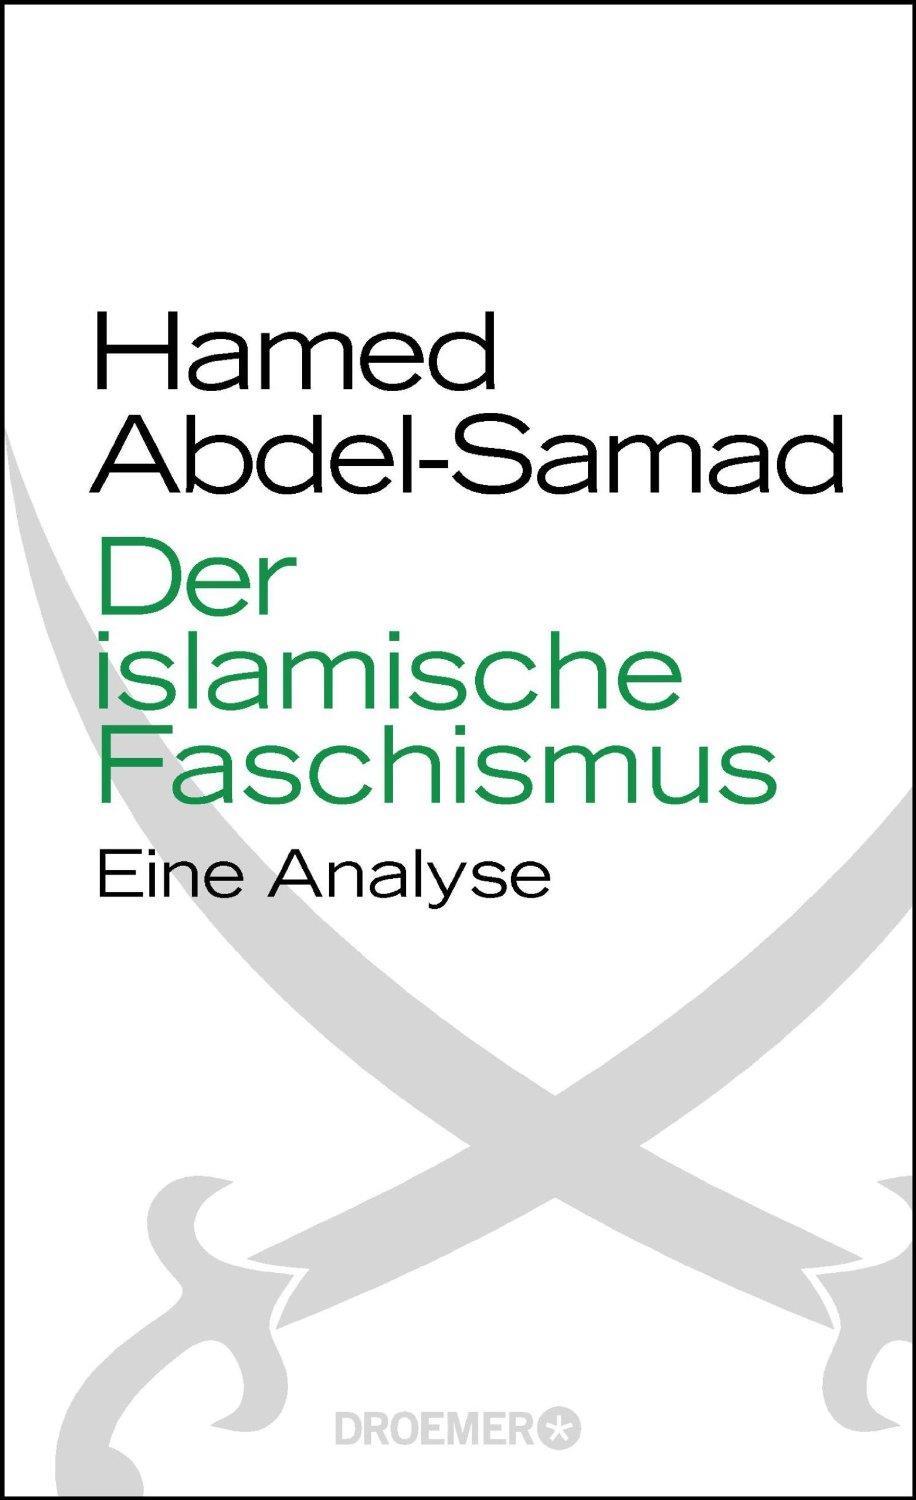 Der islamische Faschismus : eine Analyse. Von Hamed Abdel- Samad.